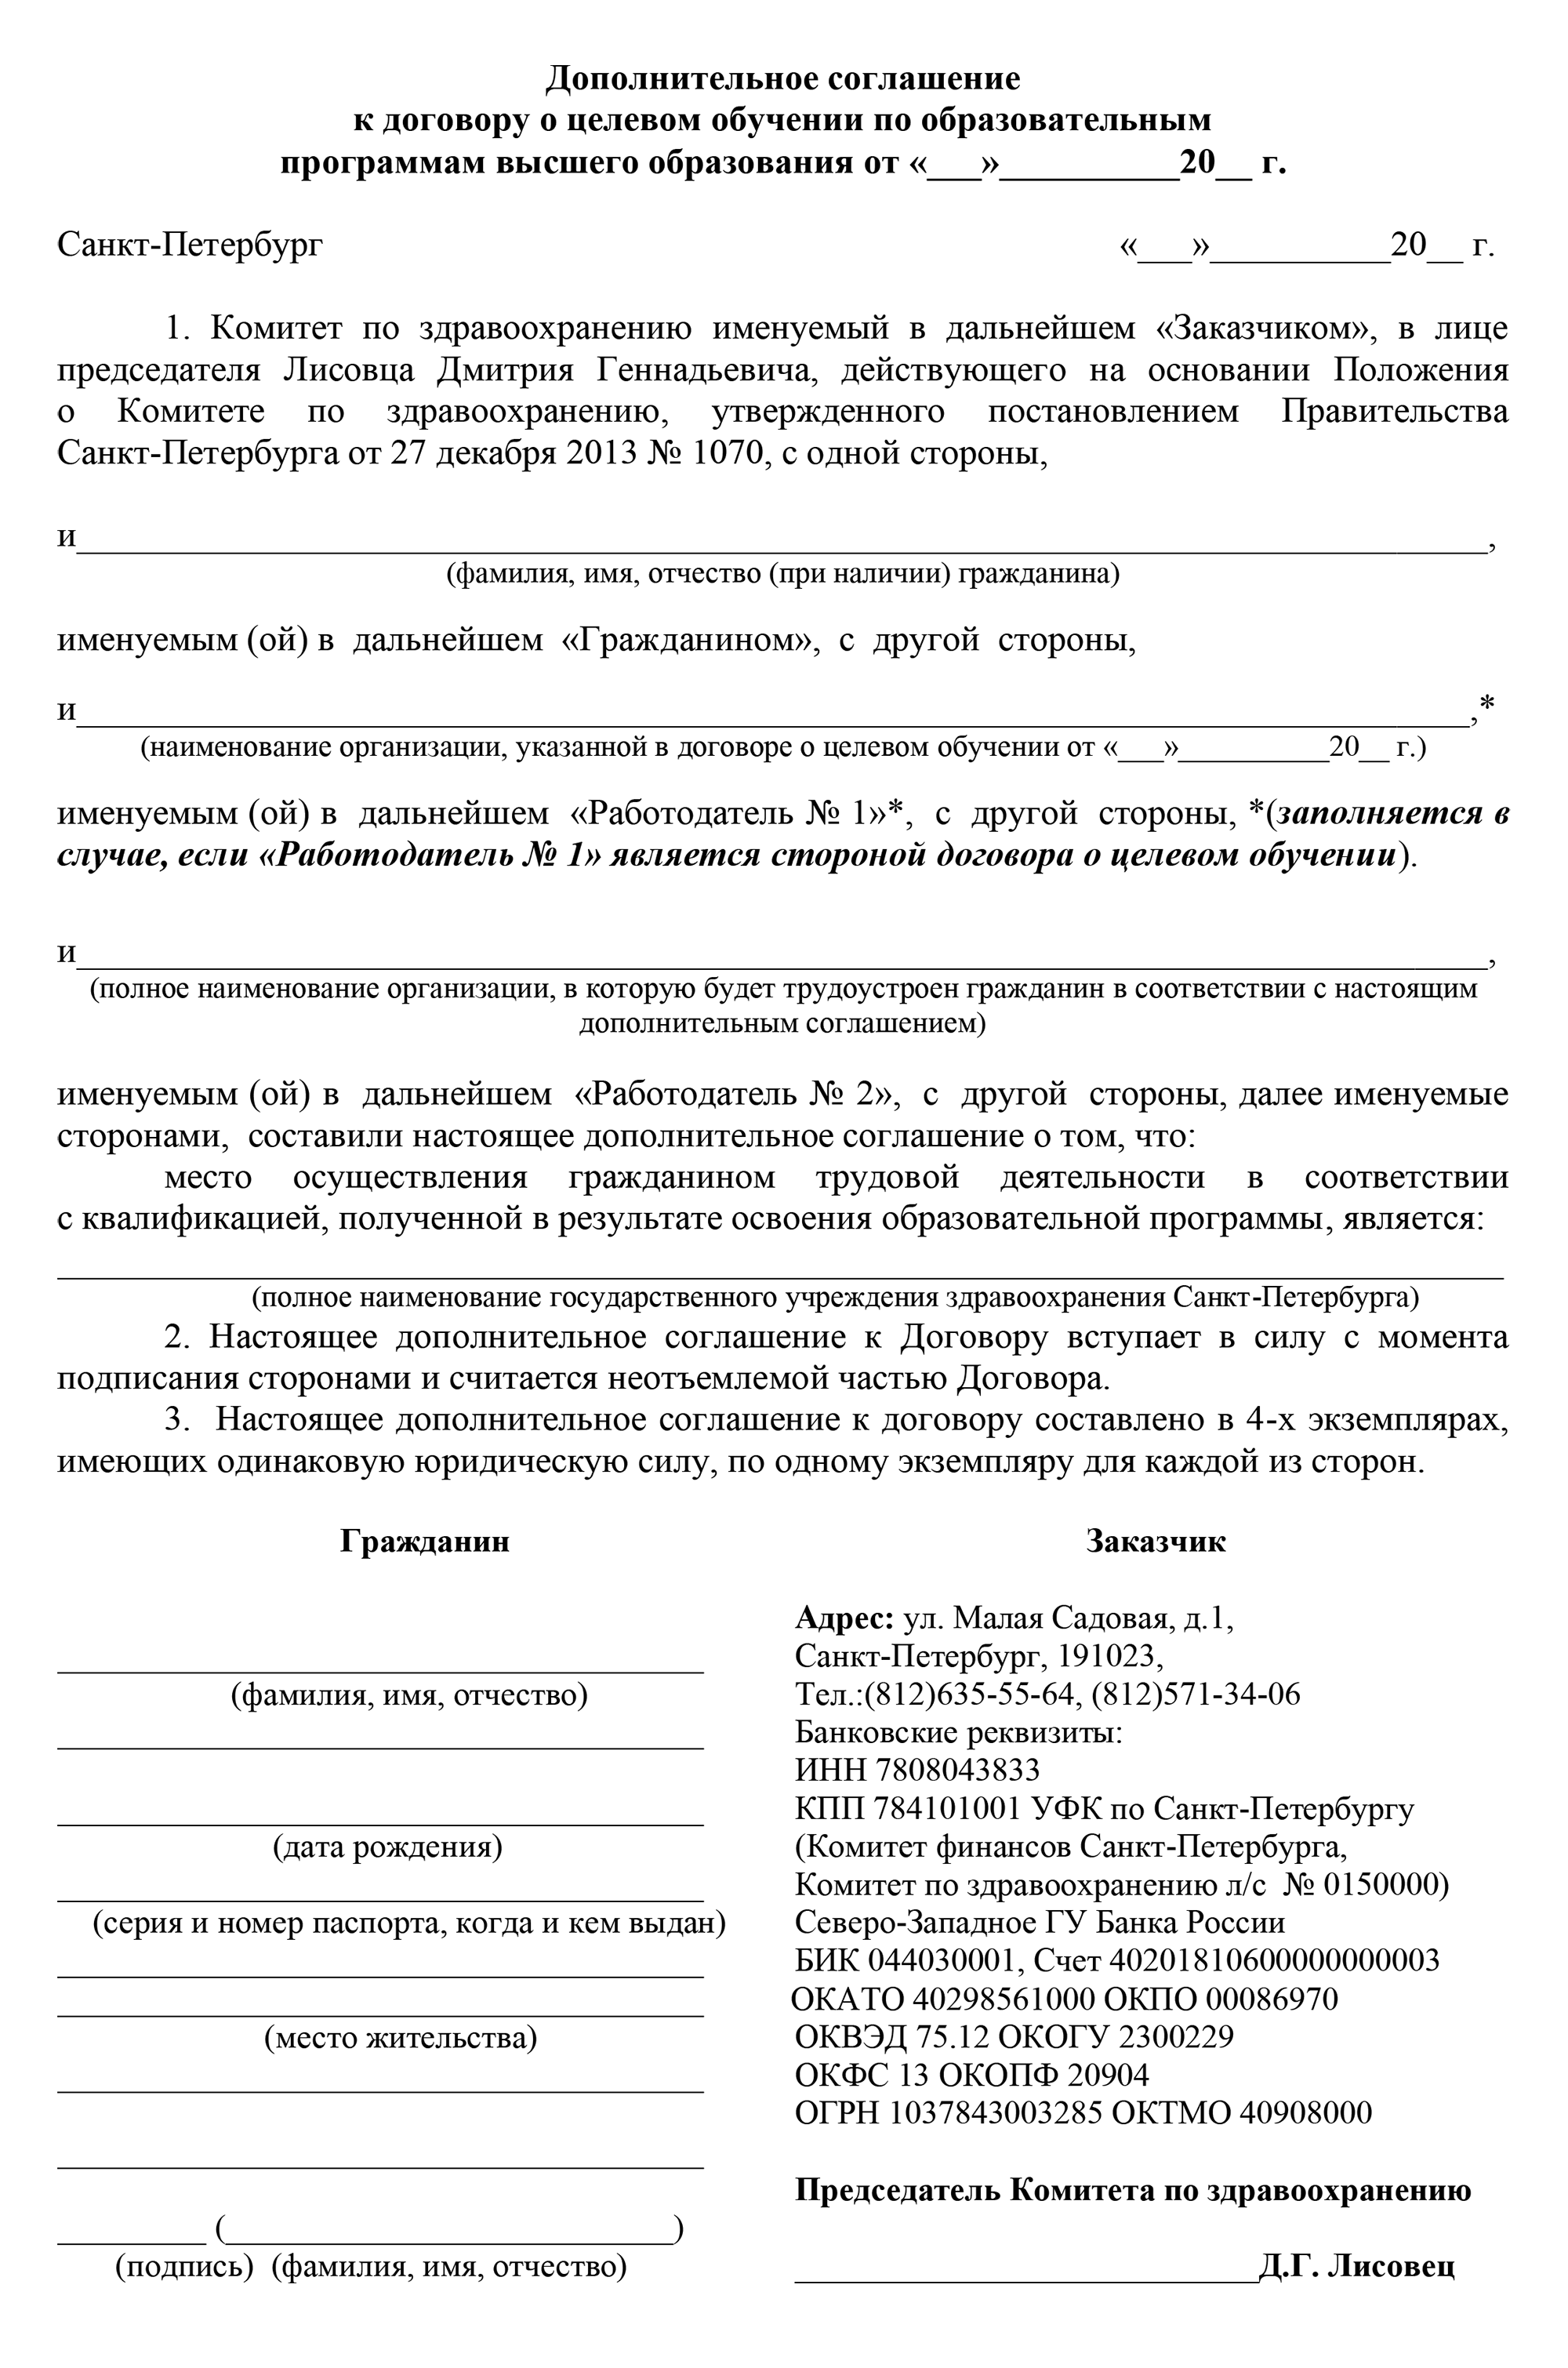 В моем случае дополнительное соглашение выглядело примерно так. Документ подписали в четырех экземплярах. Источник: zdrav.spb.ru